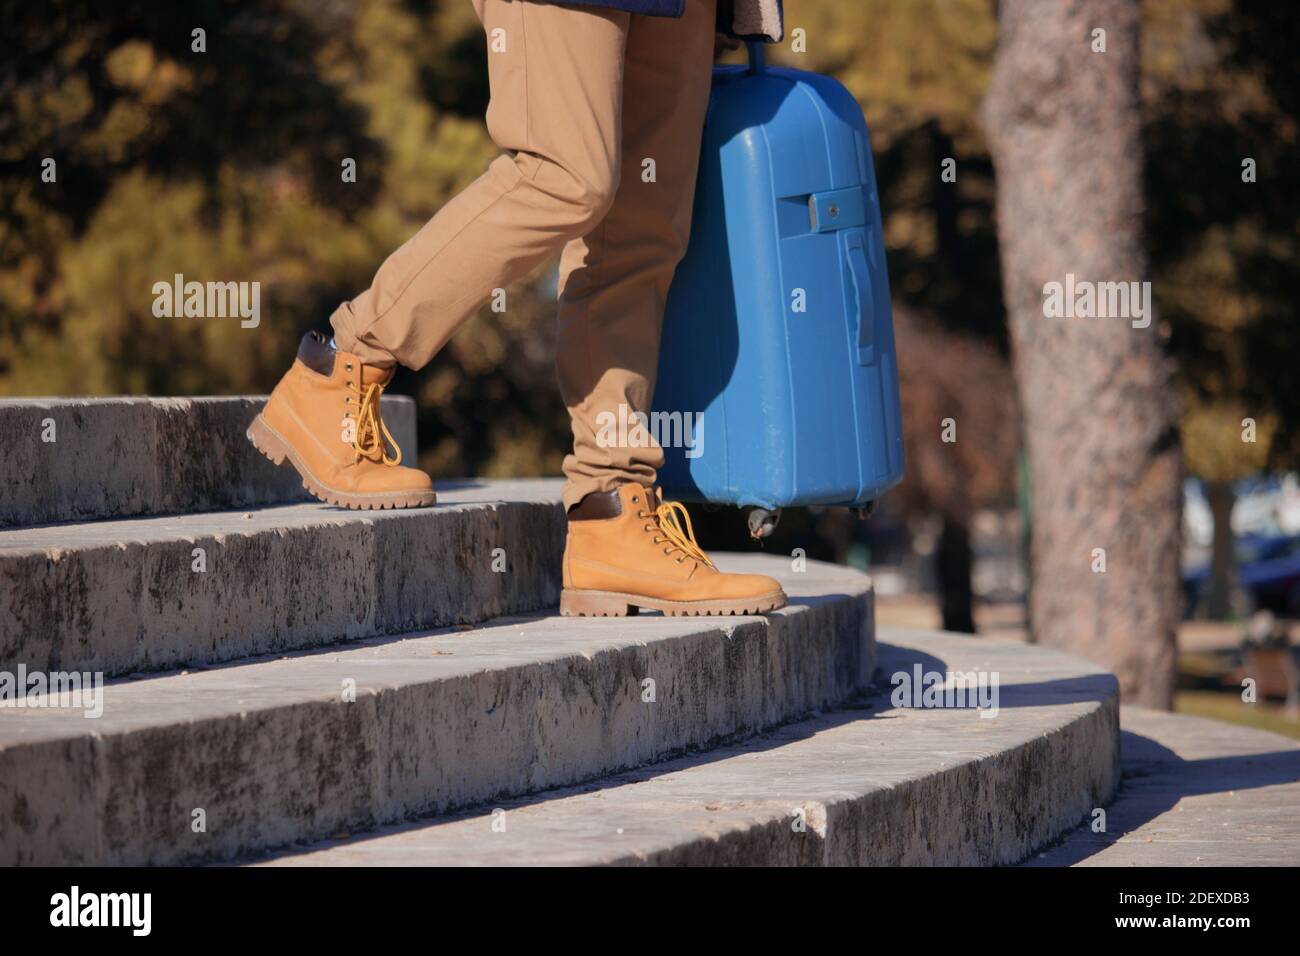 Gros plan d'un jeune homme méconnaissable descendant des escaliers dans la rue avec sa valise dans la main, fatigué après un long voyage. Voyage d'affaires 2021. Banque D'Images